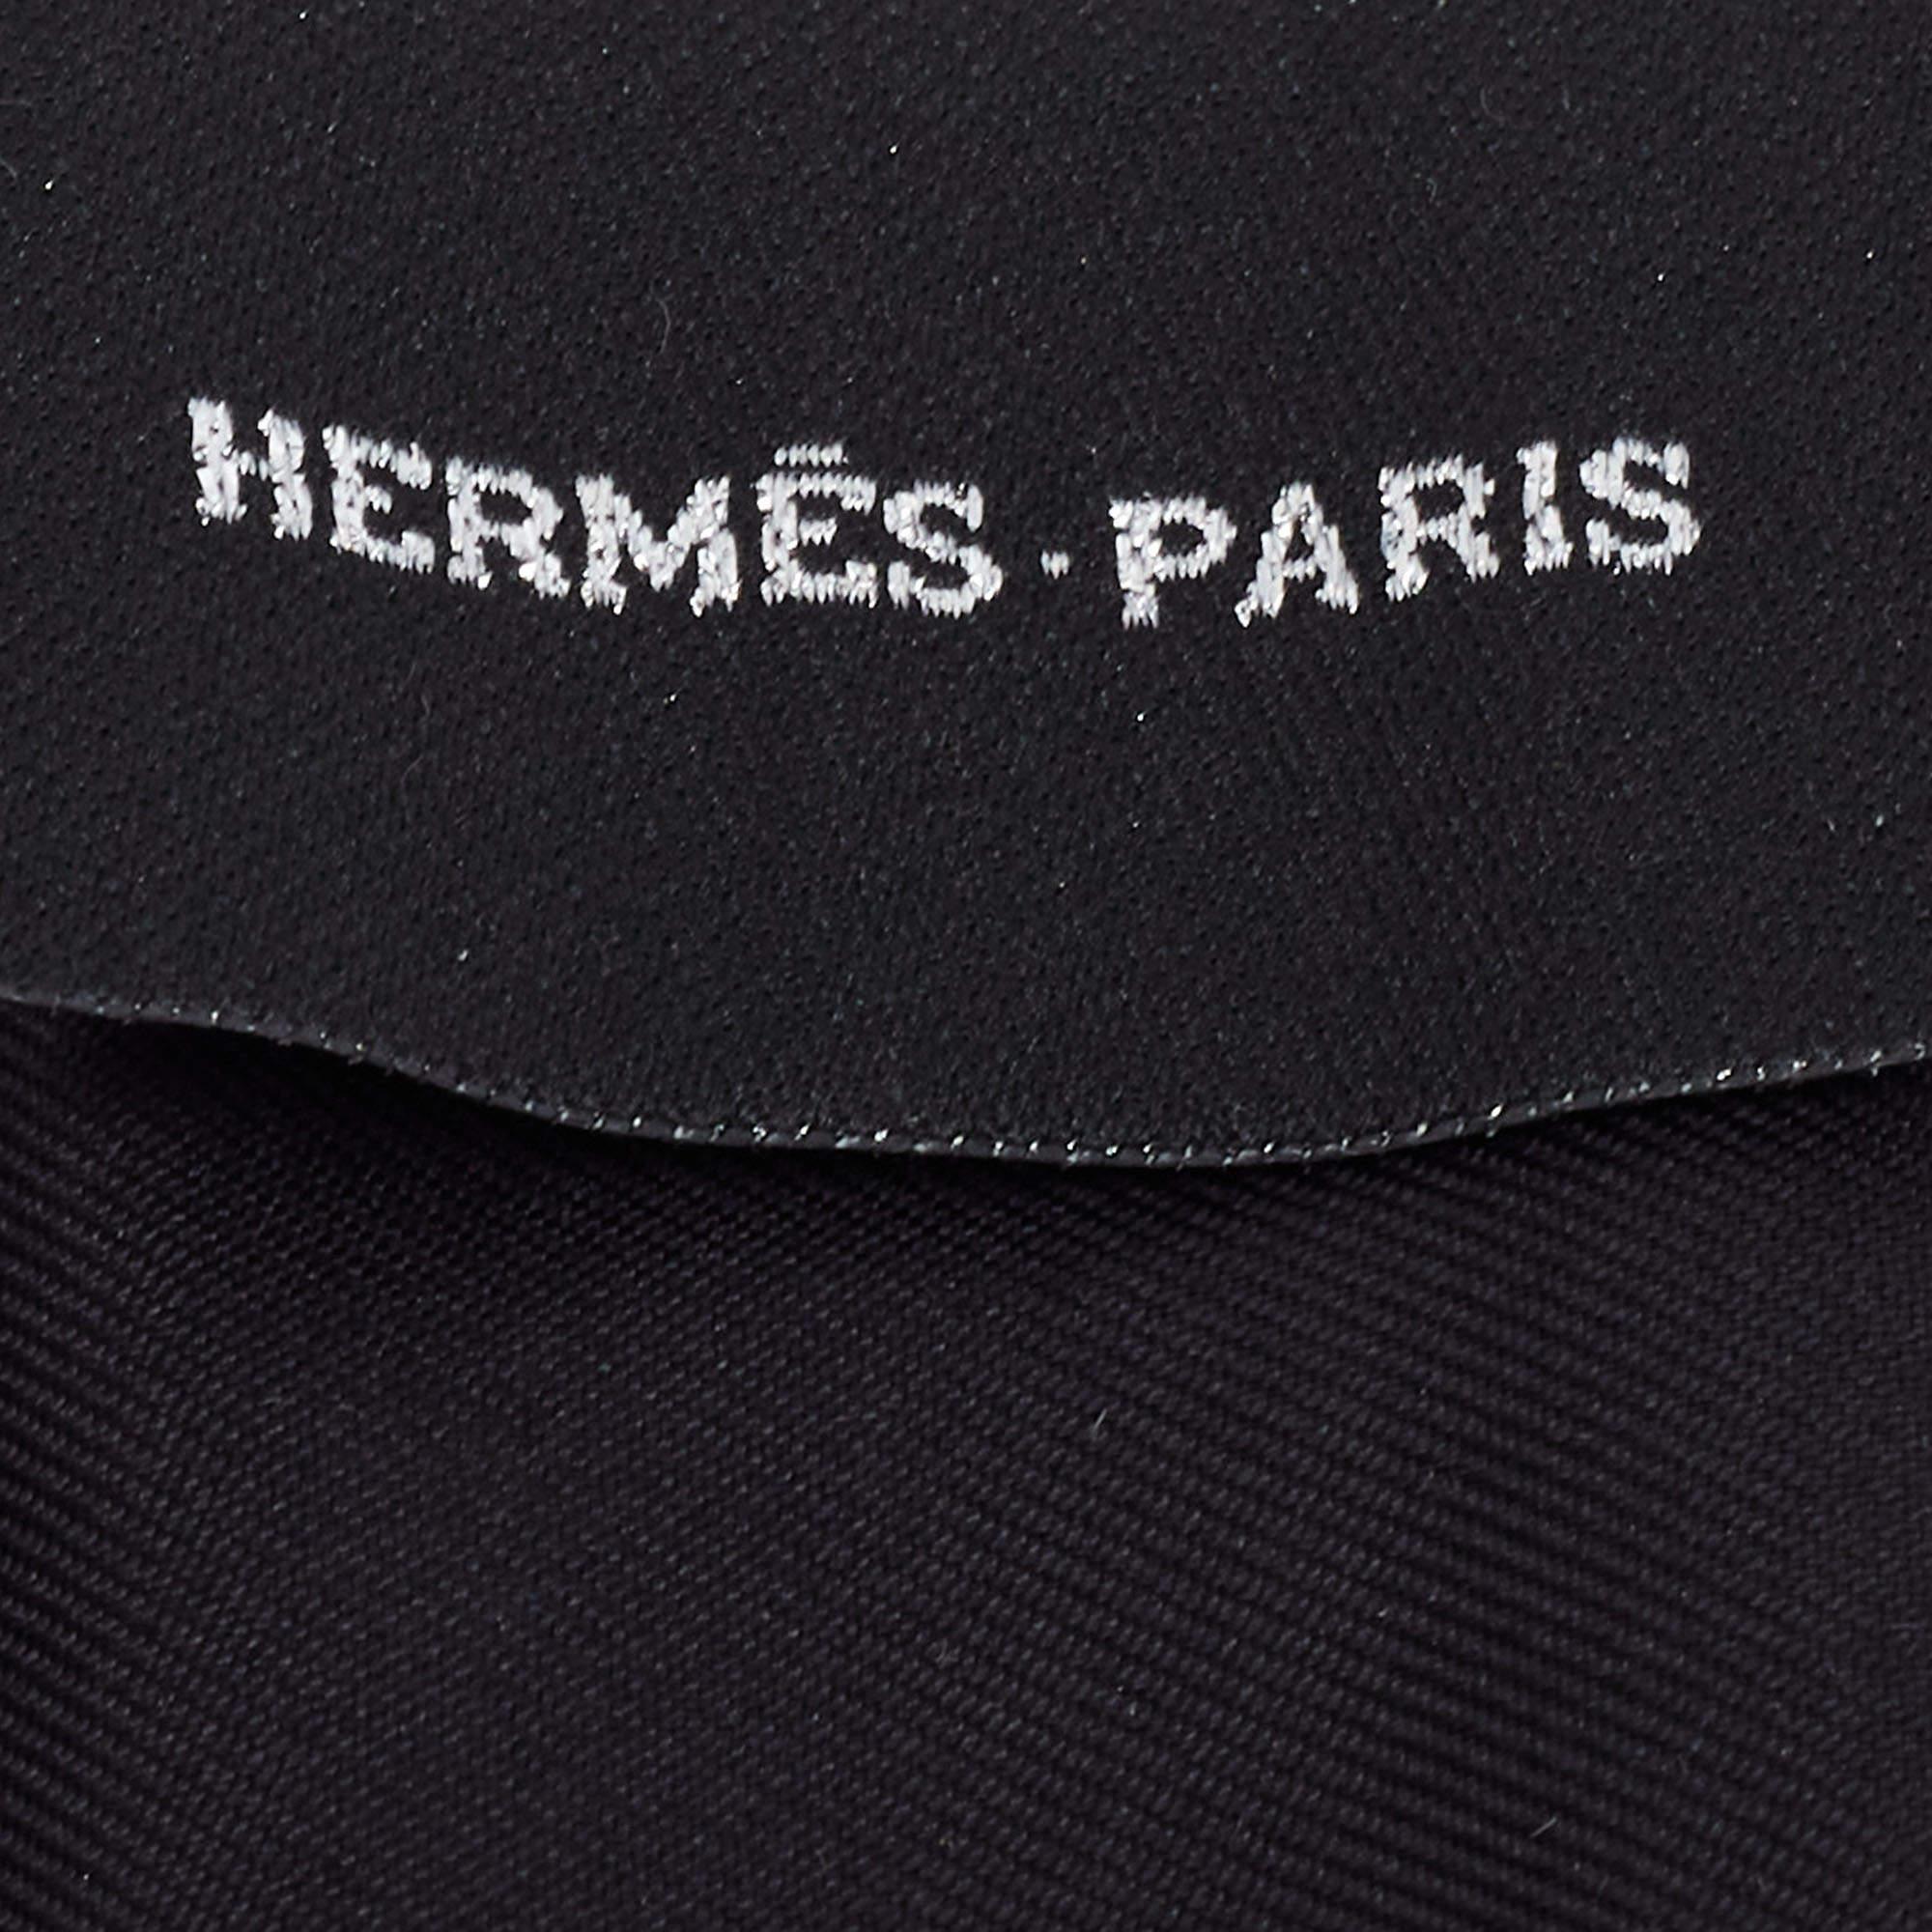 Der Hermès Twilly ist ein exquisites Accessoire aus luxuriöser Seide, das mit schimmernden schwarzen Pailletten besetzt ist. Dieses vielseitige und elegante Stück kann als Stirnband, Krawatte oder um einen Handtaschengriff gewickelt getragen werden